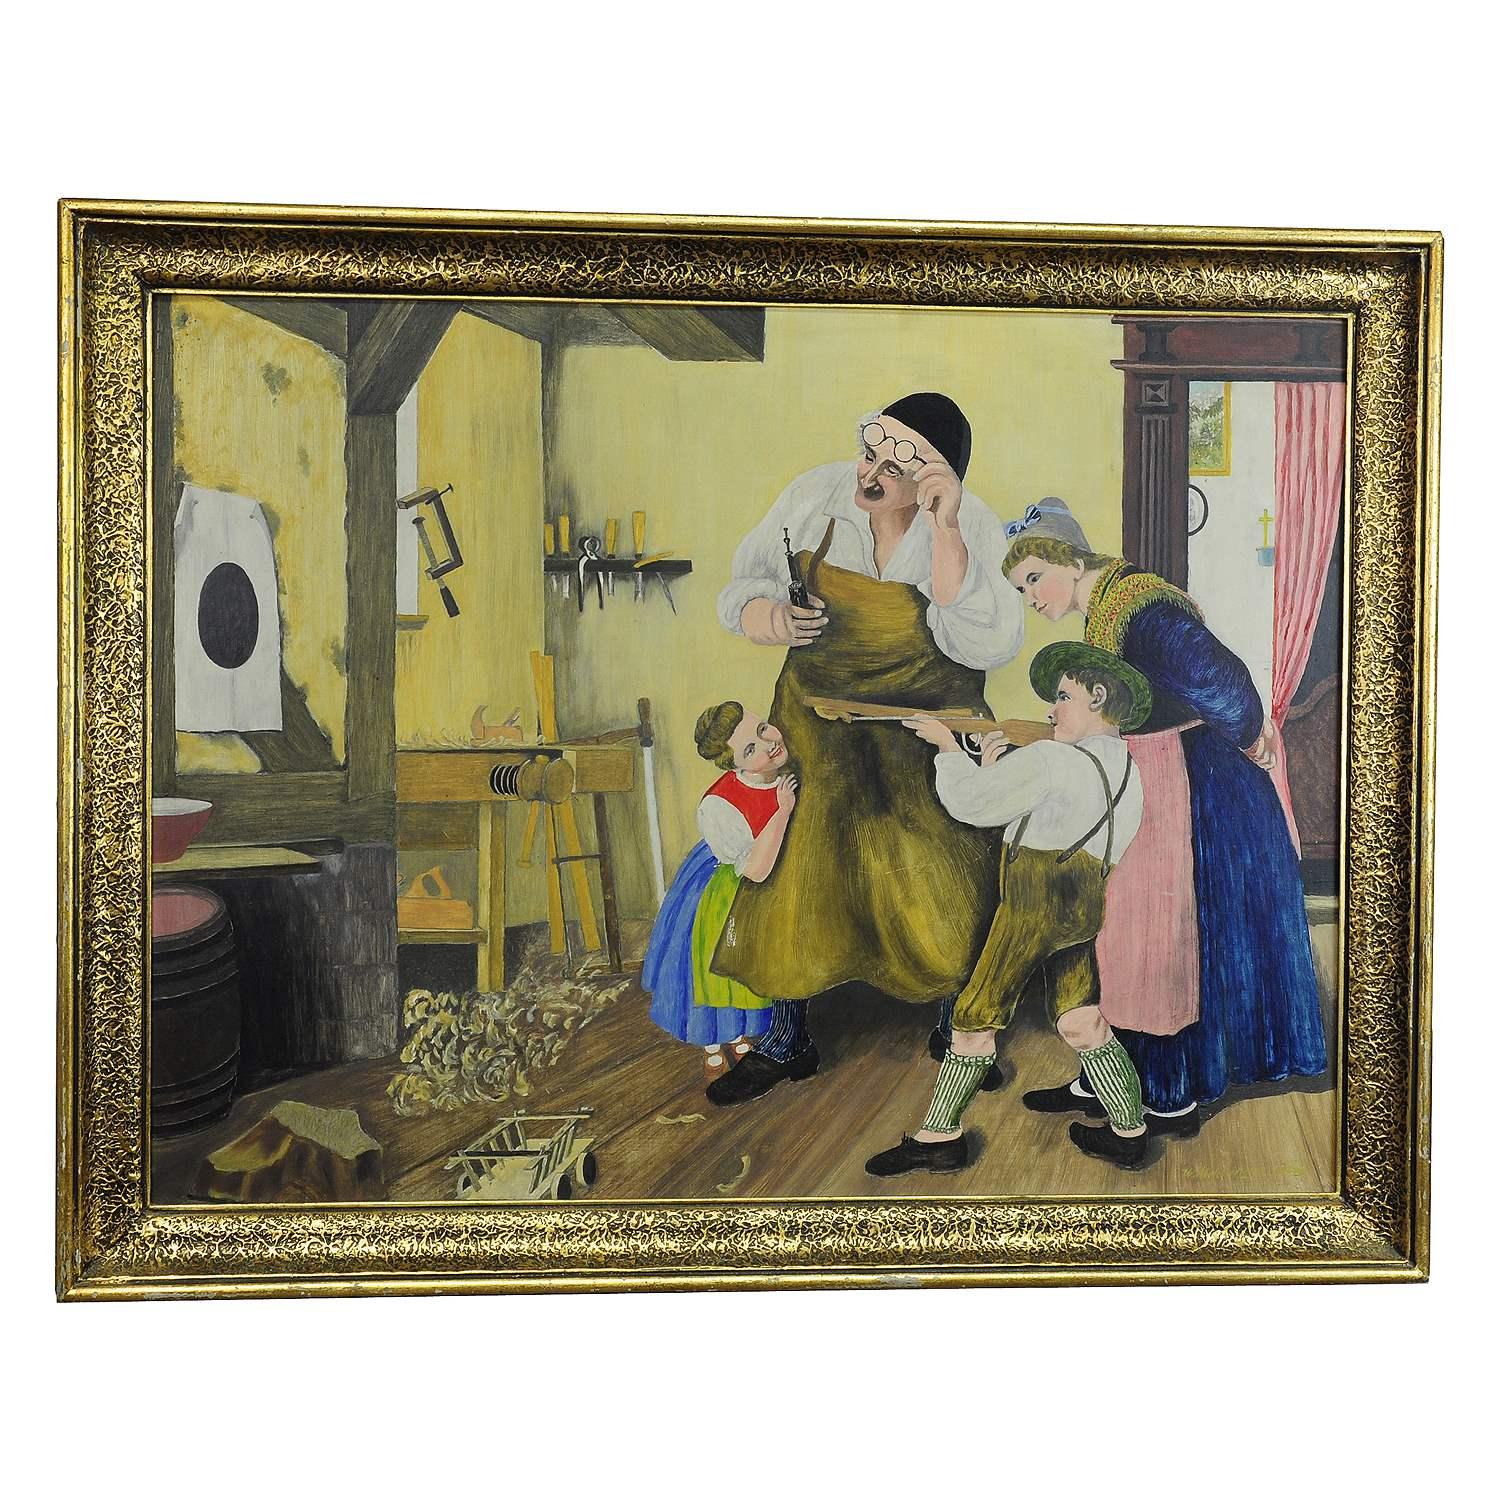 W. Melchinger - Scène folklorique bavaroise dans la menuiserie, 1956

Une peinture à l'huile originale d'époque représentant une scène familiale bavaroise folklorique dans la menuiserie. Peint à l'huile sur carton, signé par W. Melchinger 1956. Une